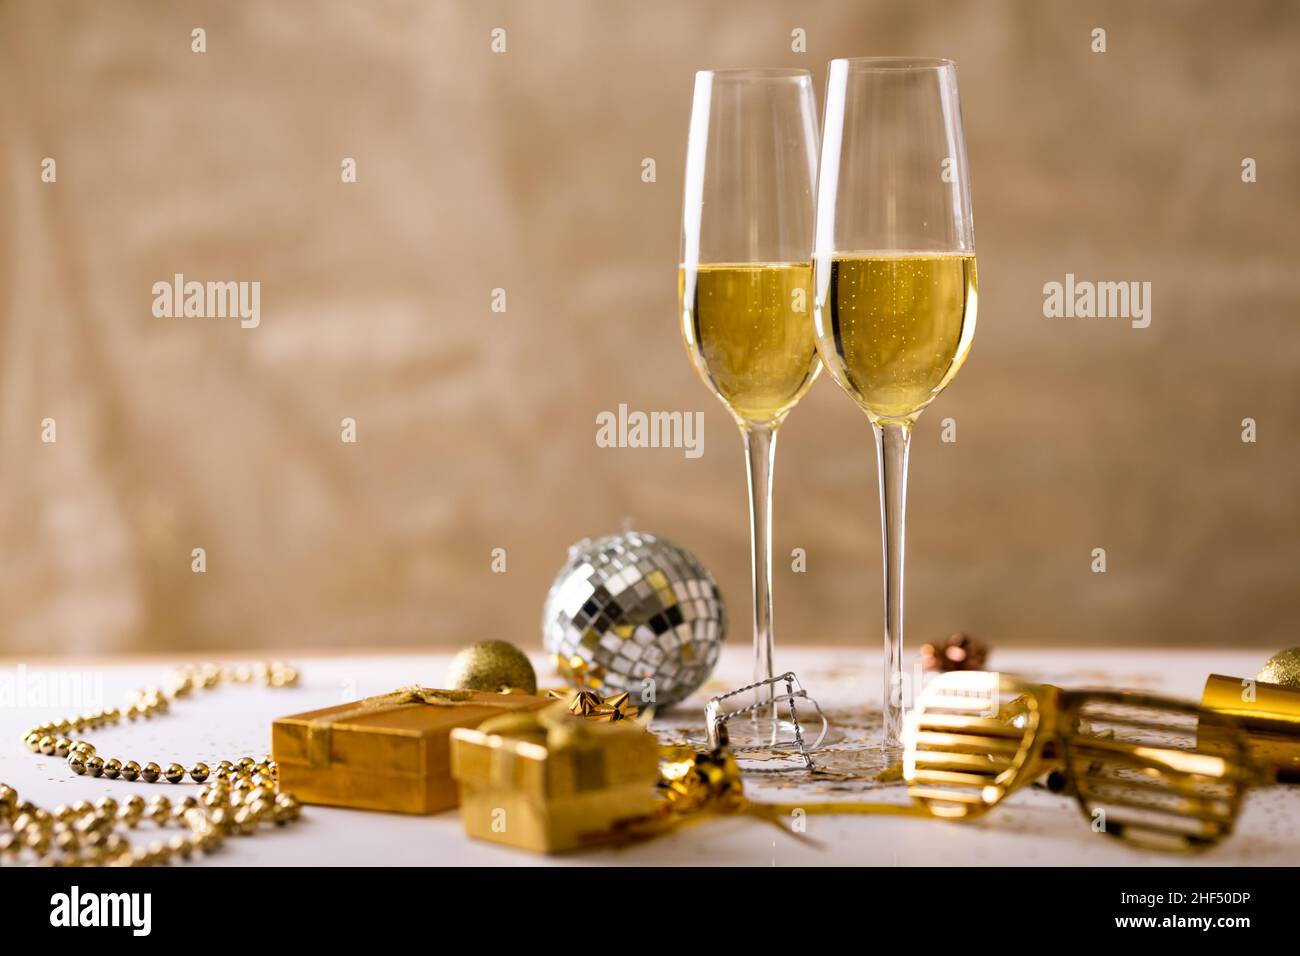 Champagnerflöten mit goldfarbener Dekoration und Geschenkboxen vor beigefarbenem Hintergrund, Kopierfläche Stockfoto